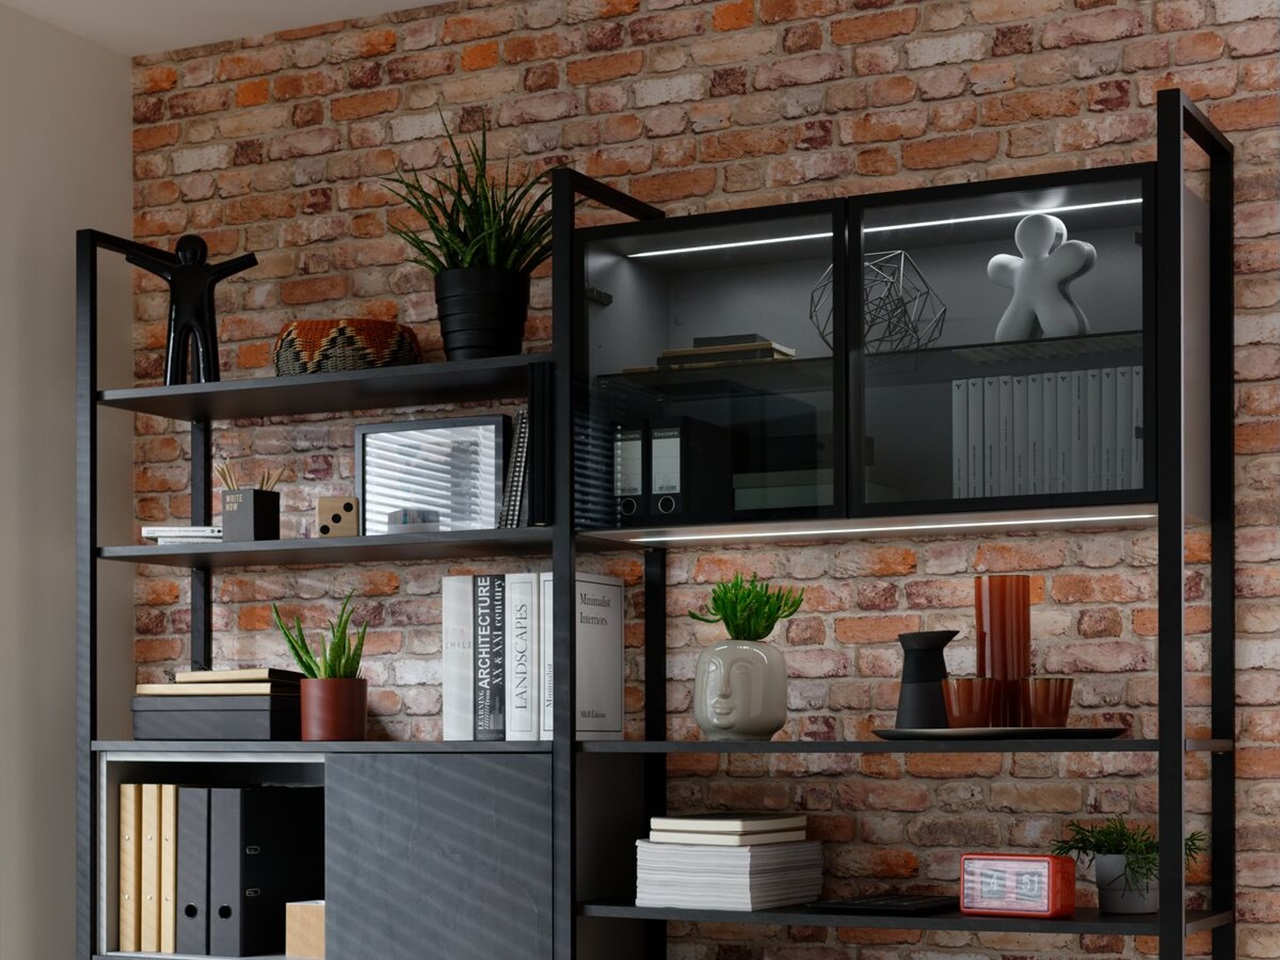 Bureaux, meubles et rangements, Bureau LISBURN style industriel 140 x 70  chêne métal graphite